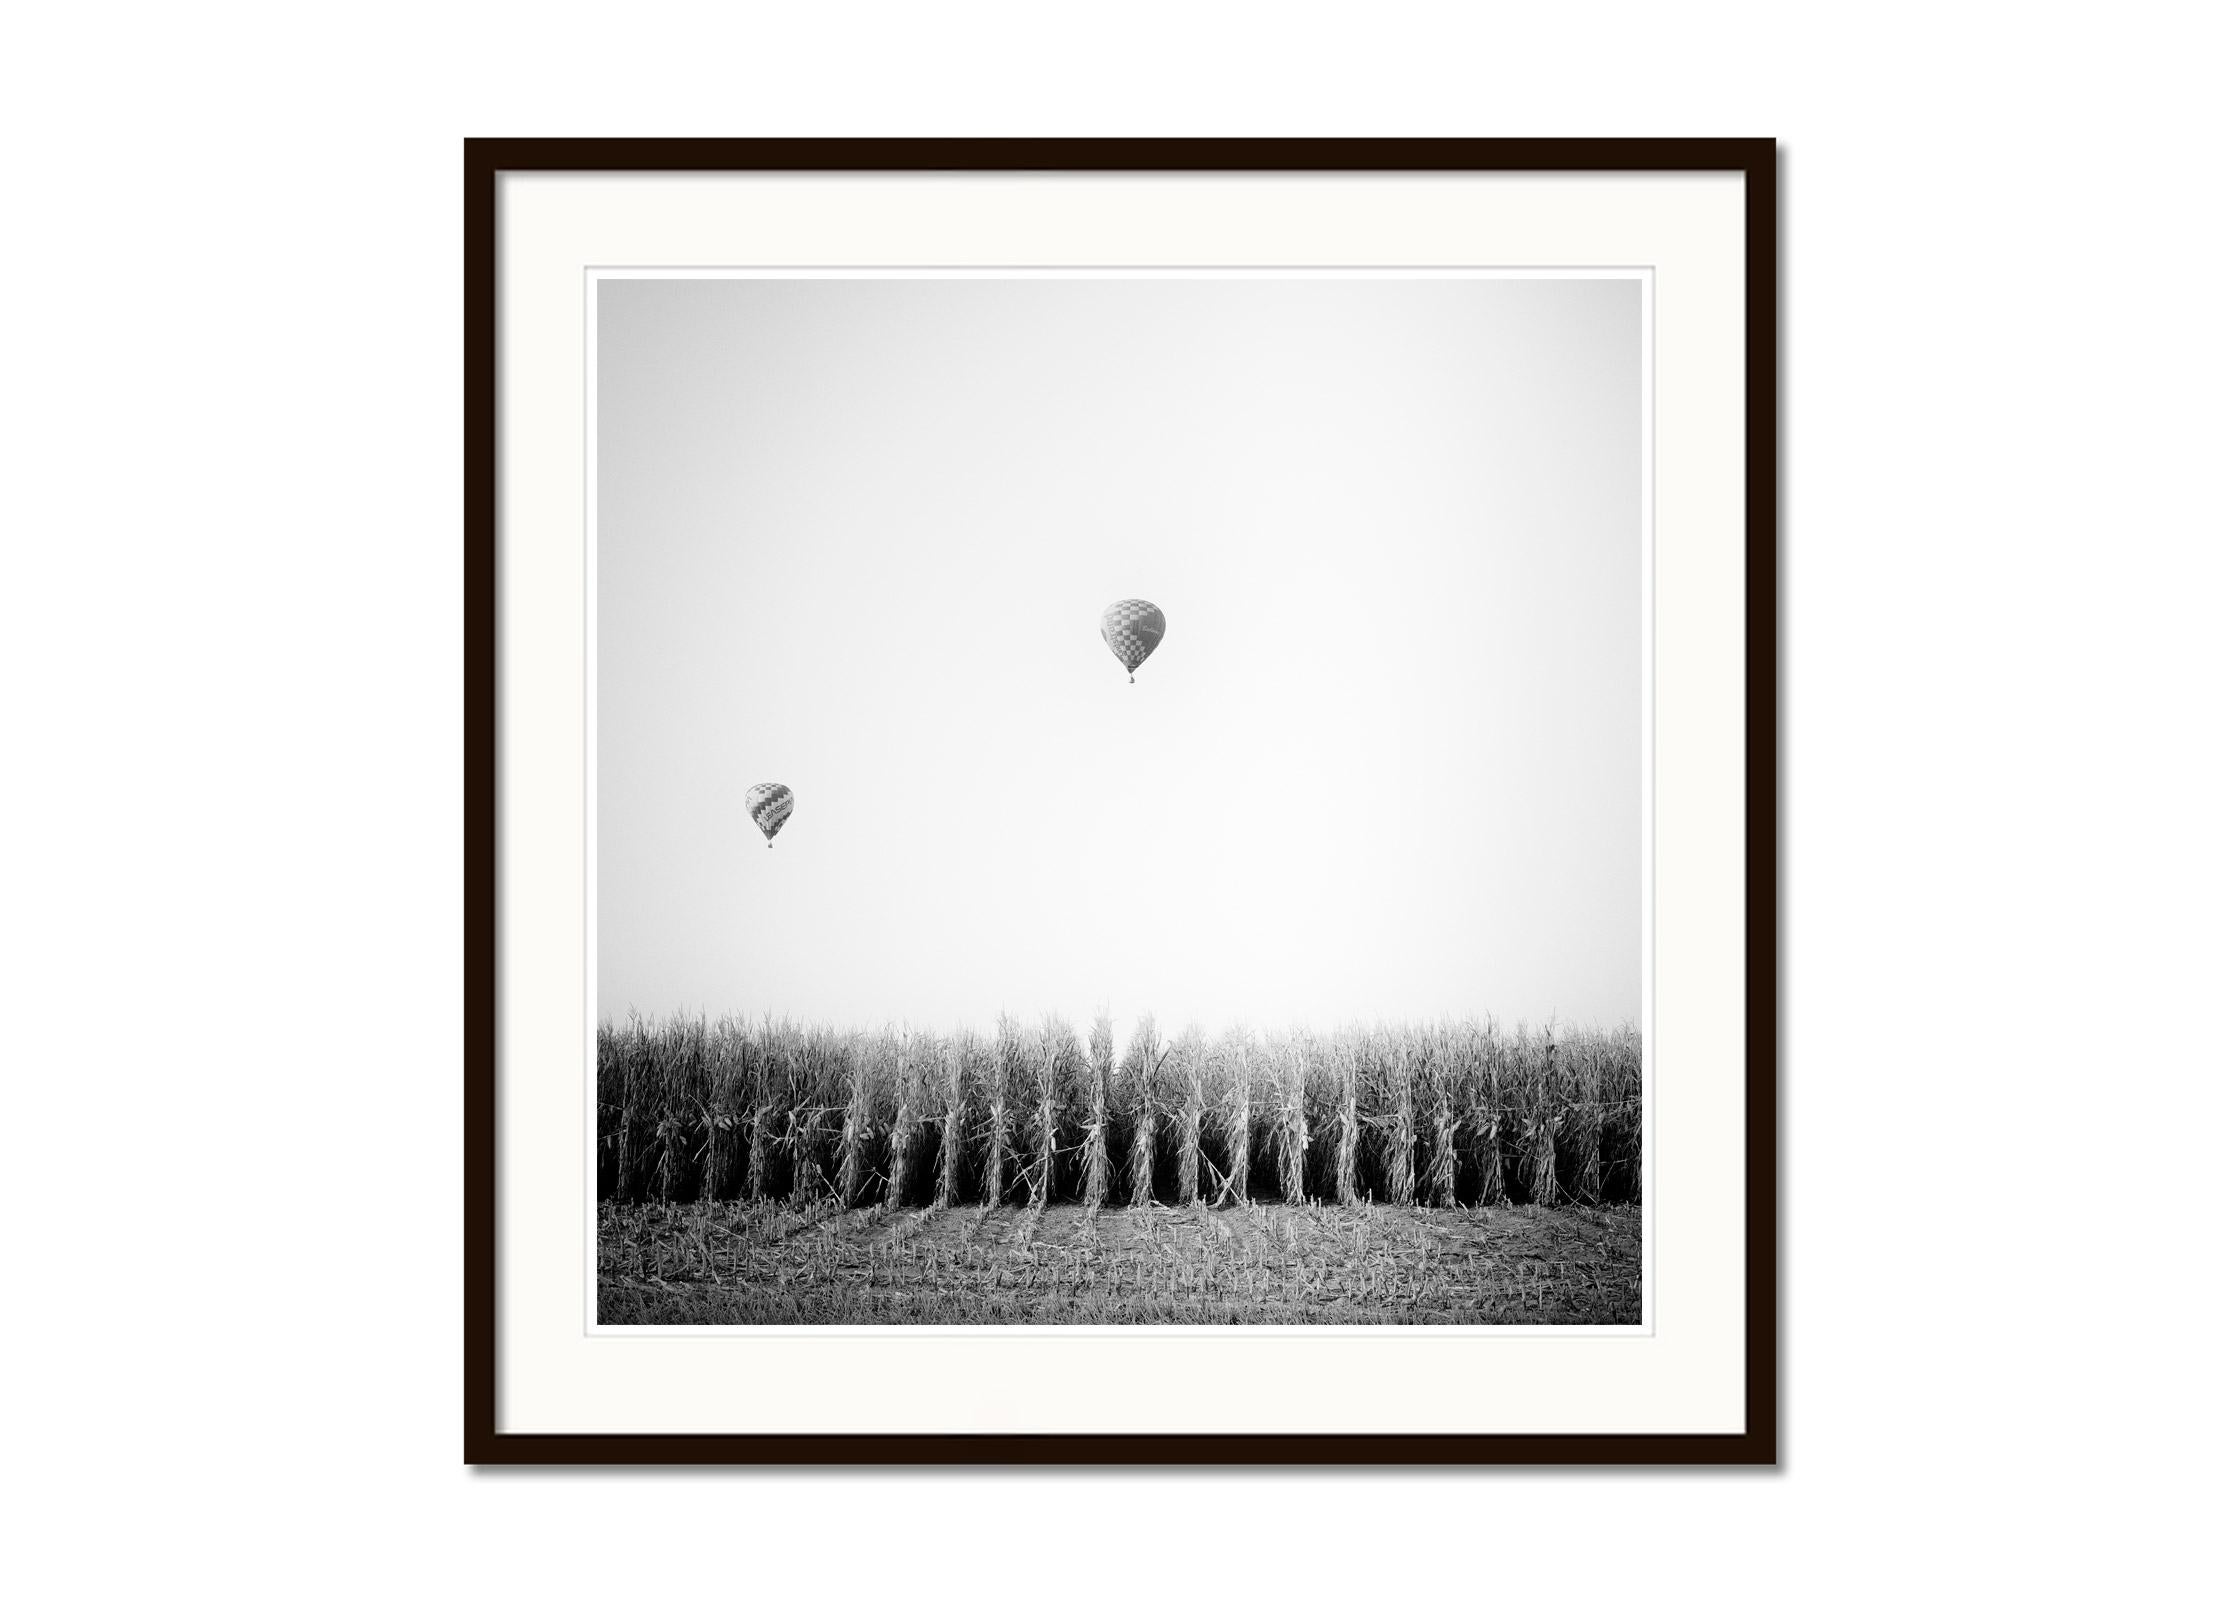 Hot Air Balloon, Cornfield, Championship, Schwarz-Weiß-Landschaftsfotodruck (Grau), Black and White Photograph, von Gerald Berghammer